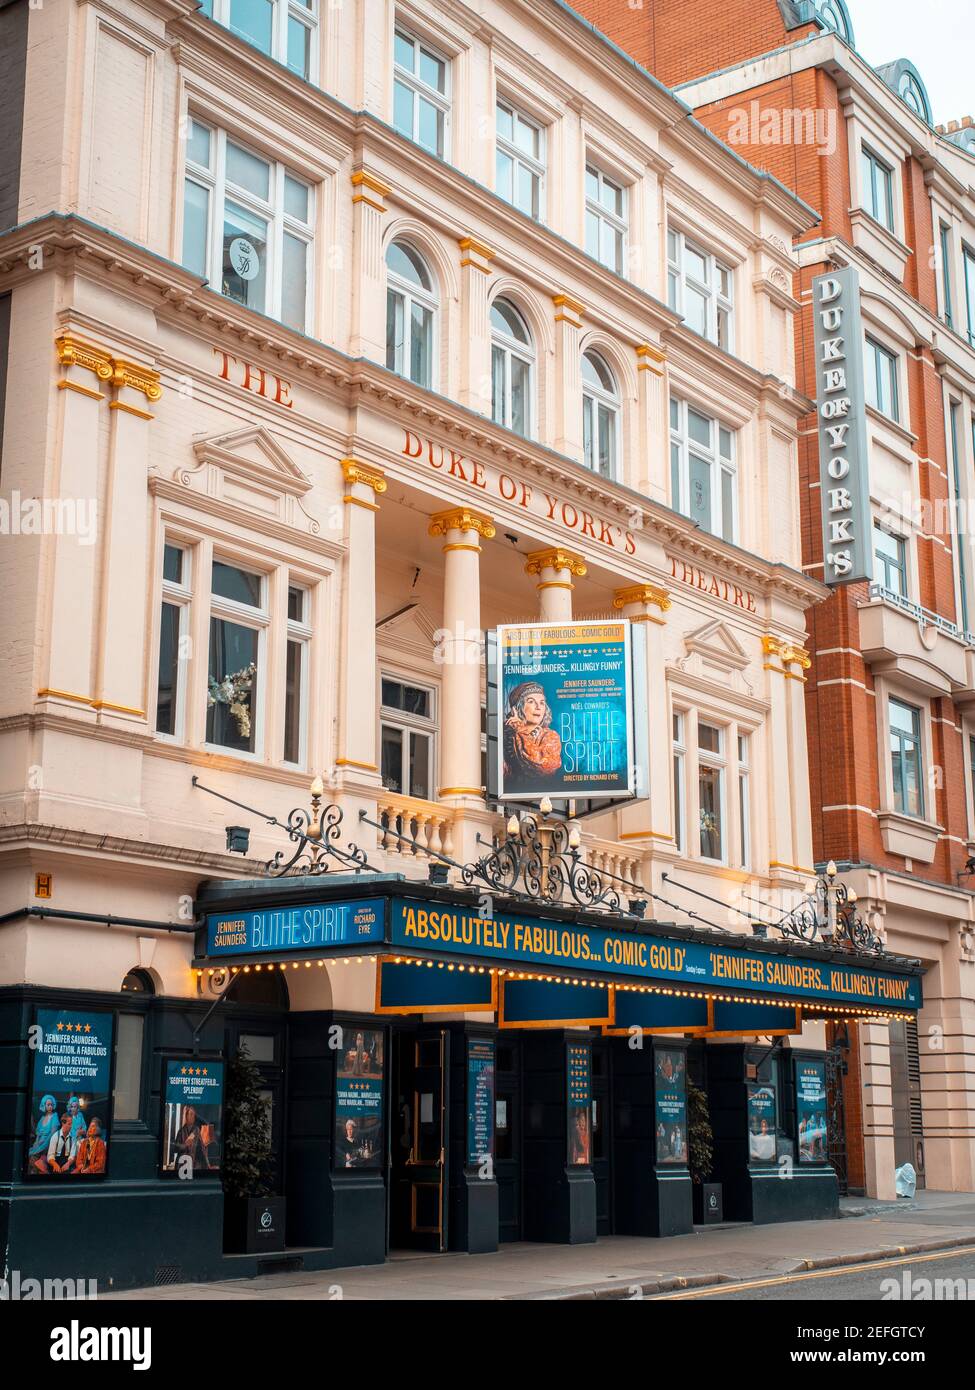 London, England - 17. März 2020: Das Duke of York's Theatre mit der Show 'Bliethe Spirit' im Londoner West End ist wegen Coronavirus bis auf Ankündigung geschlossen Stockfoto